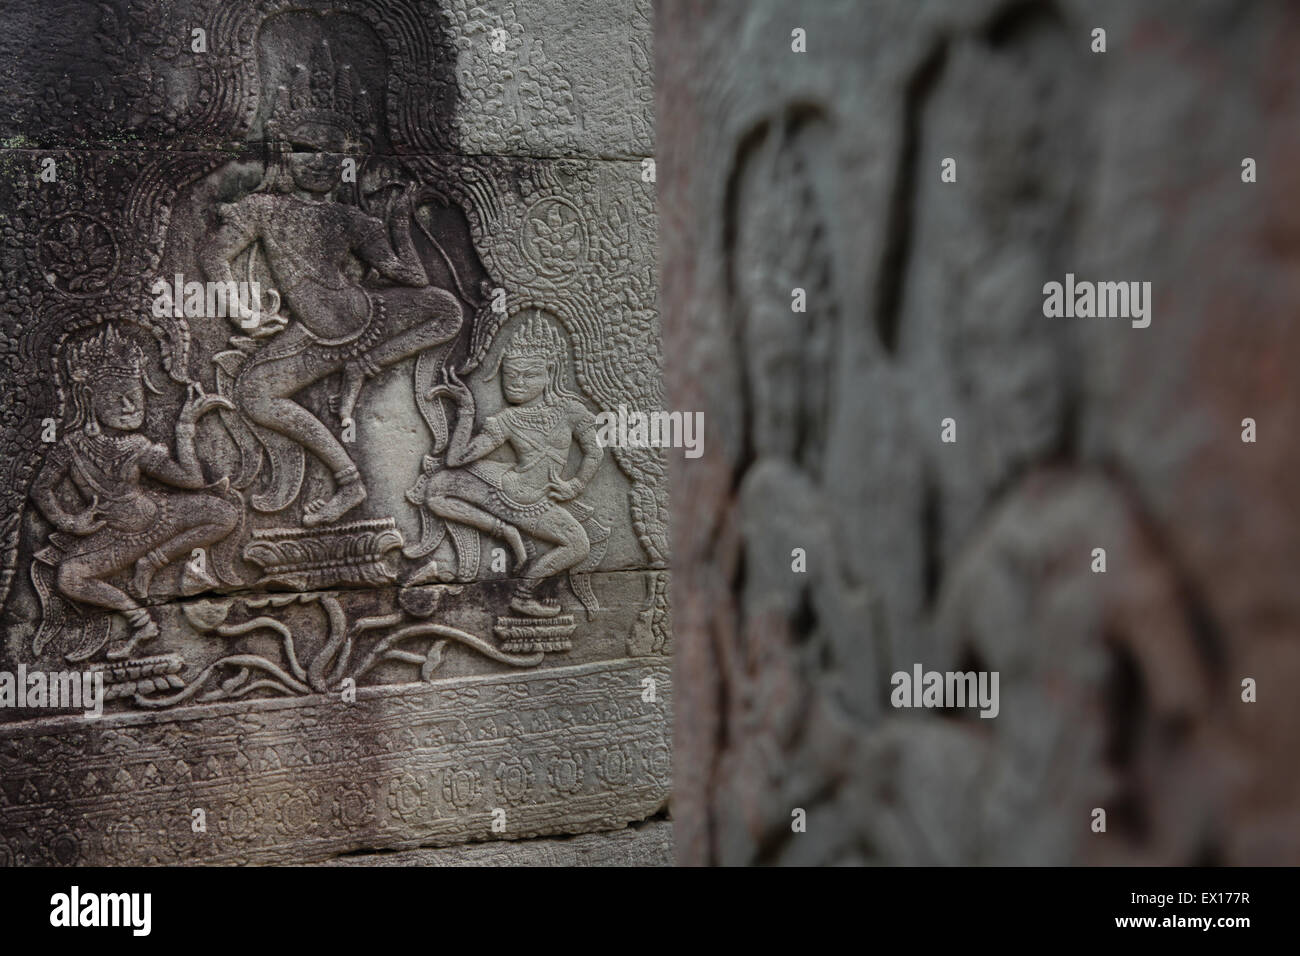 Details der Apsara Reliefs am Tempel Säulen der Prasat Bayon Tempel Angkor Thom, Siem Reap, Kambodscha. Stockfoto